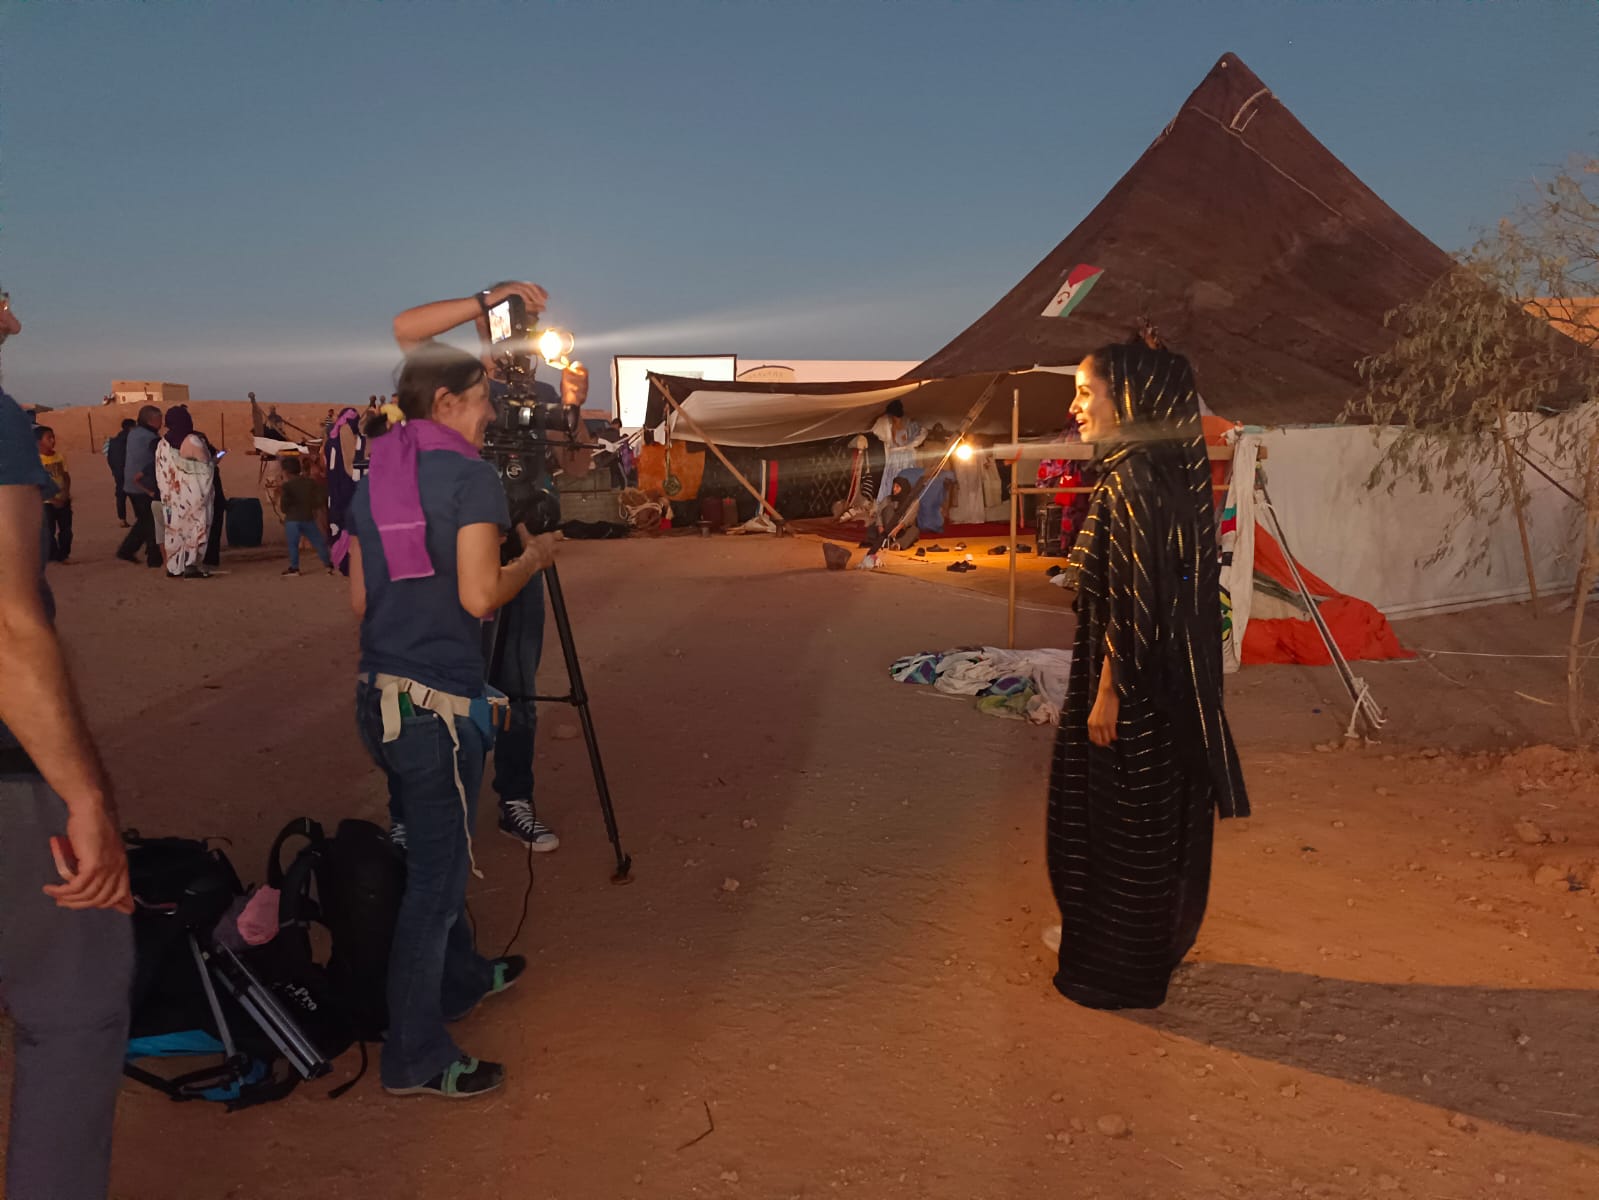 La UNED viaja al Sahara Occidental para participar en el Festival Internacional de Cine del Sáhara (FiSahara) Auserd, 2022. Beatriz Pérez Galán (Dpto. de Antropología, UNED) Yolanda Prieto (realizadora UNED MEDIA) directoras de la serie, y Juan Manuel Segura (cámara UNED MEDIA)